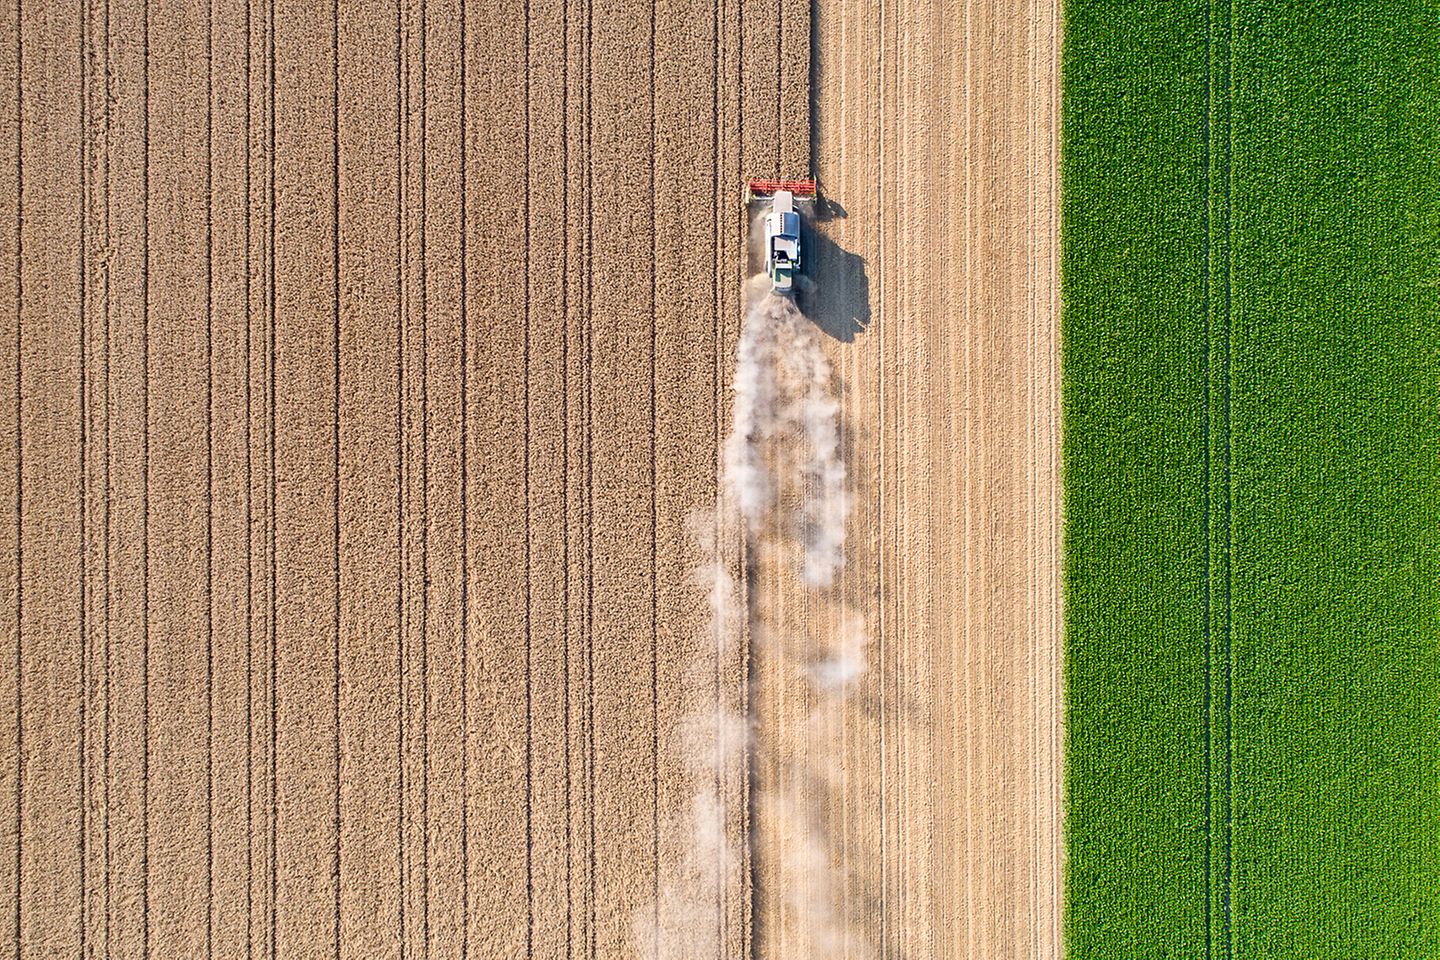 Um trator passar por um campo de trigo, deixando para trás uma nuvem de poeira